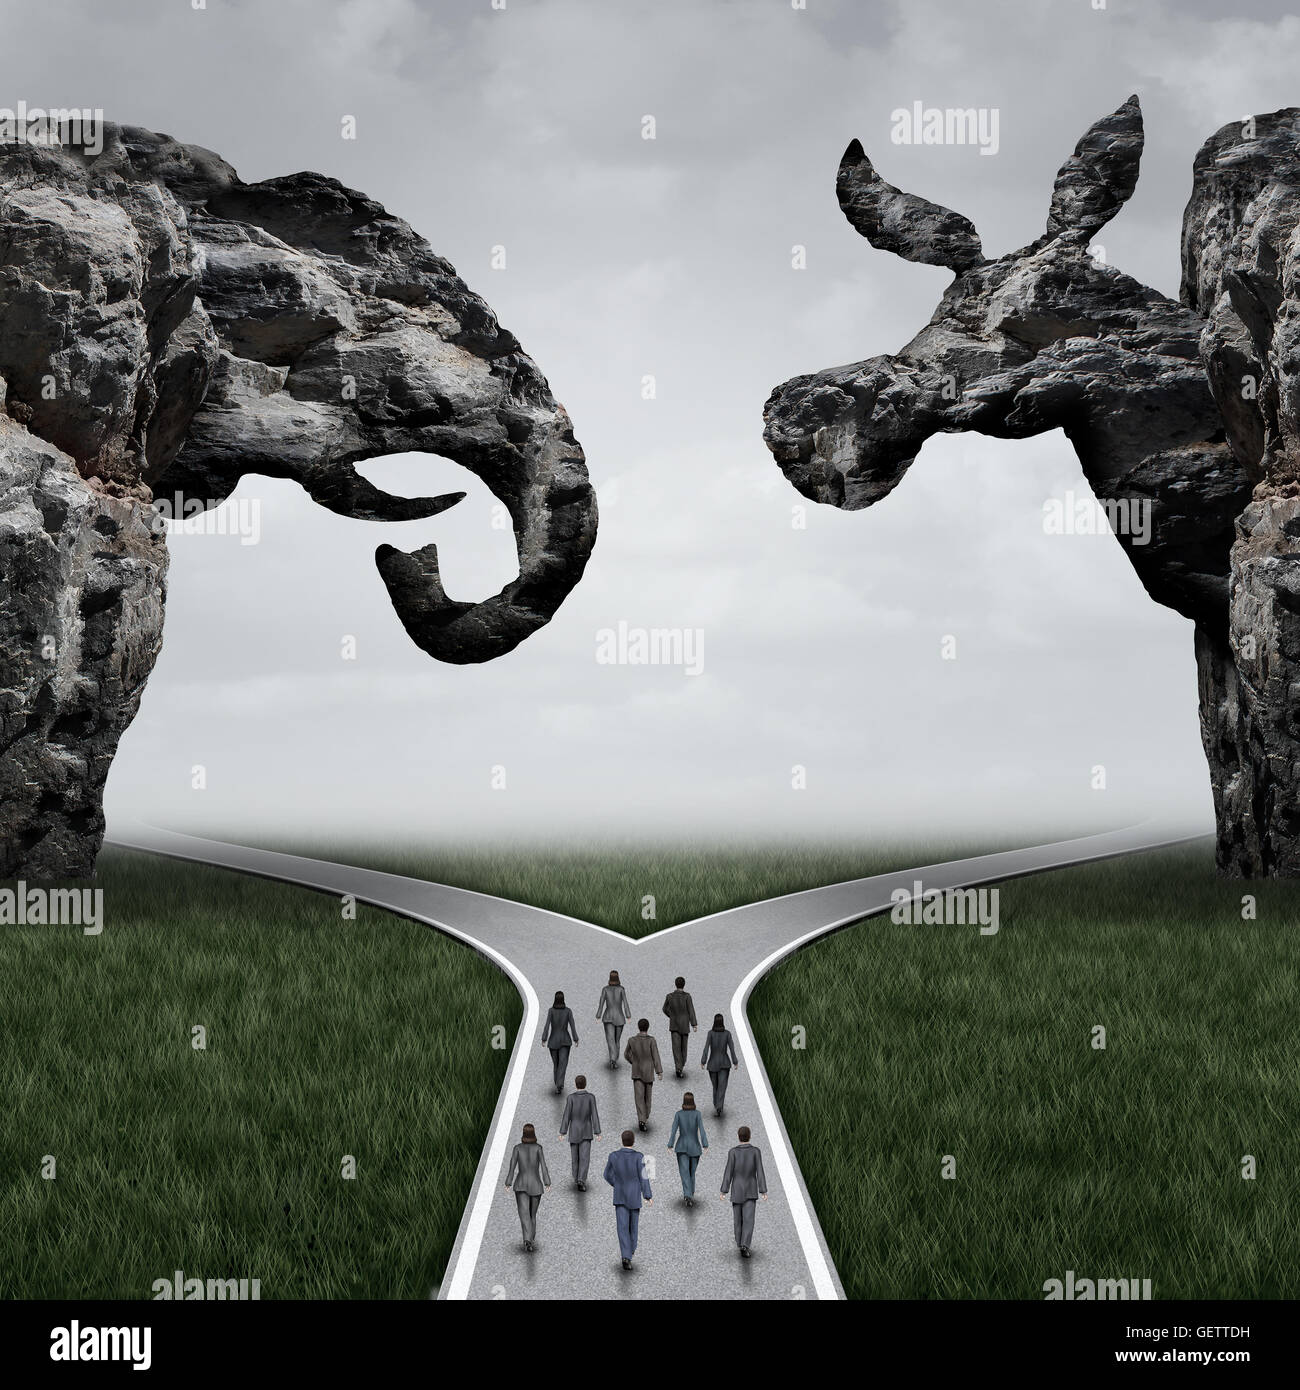 Decisión electoral americana y votantes en los EE.UU. concepto como votantes caminando hacia una bifurcación en la carretera bajo un acantilado en forma de un elefante y el burro que representan opciones conservadores y liberales con ilustración 3D elementos. Foto de stock